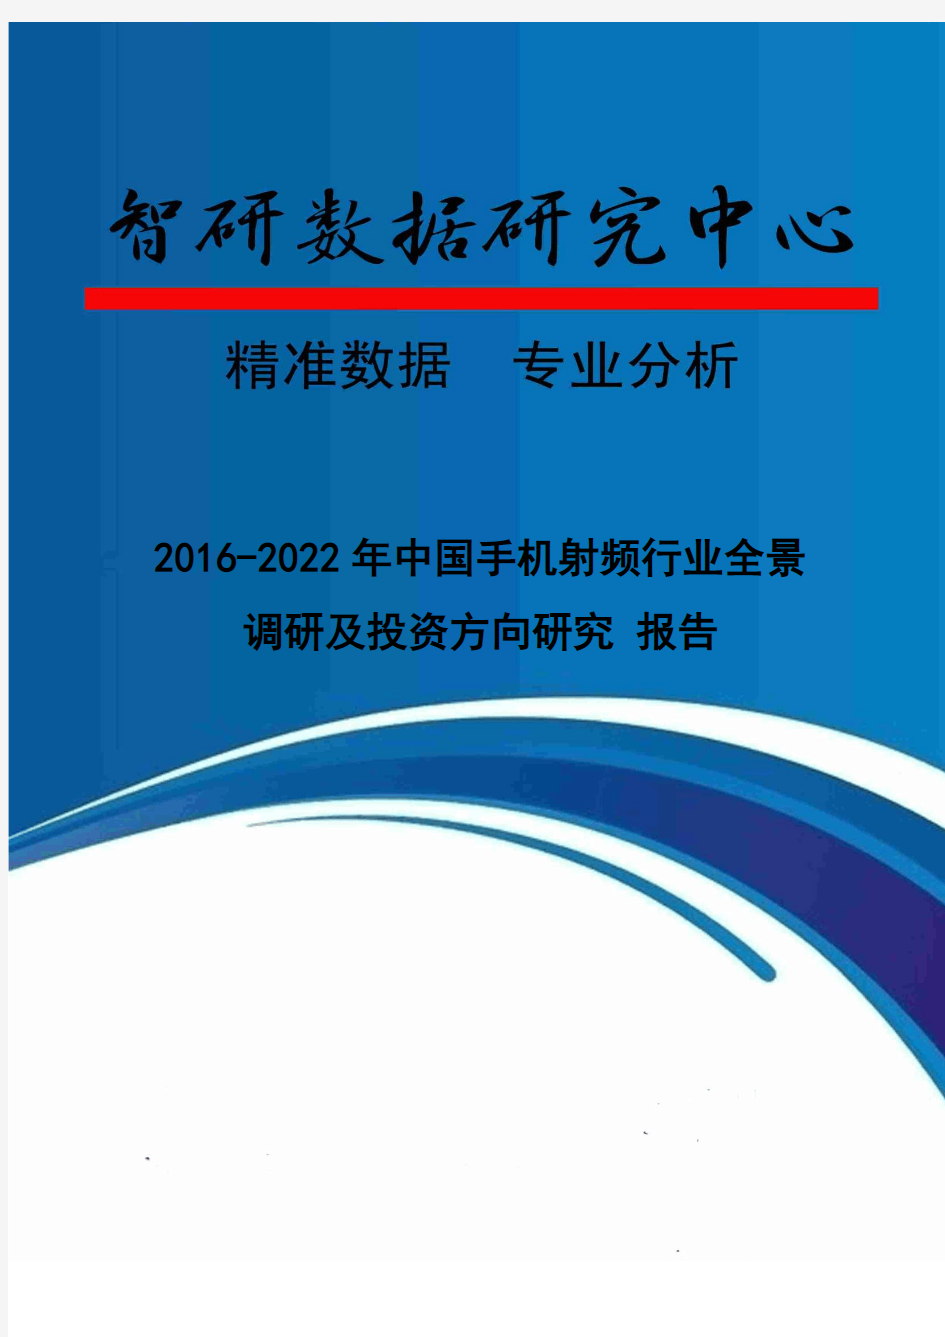 2016-2022年中国手机射频行业全景调研及投资方向研究 报告